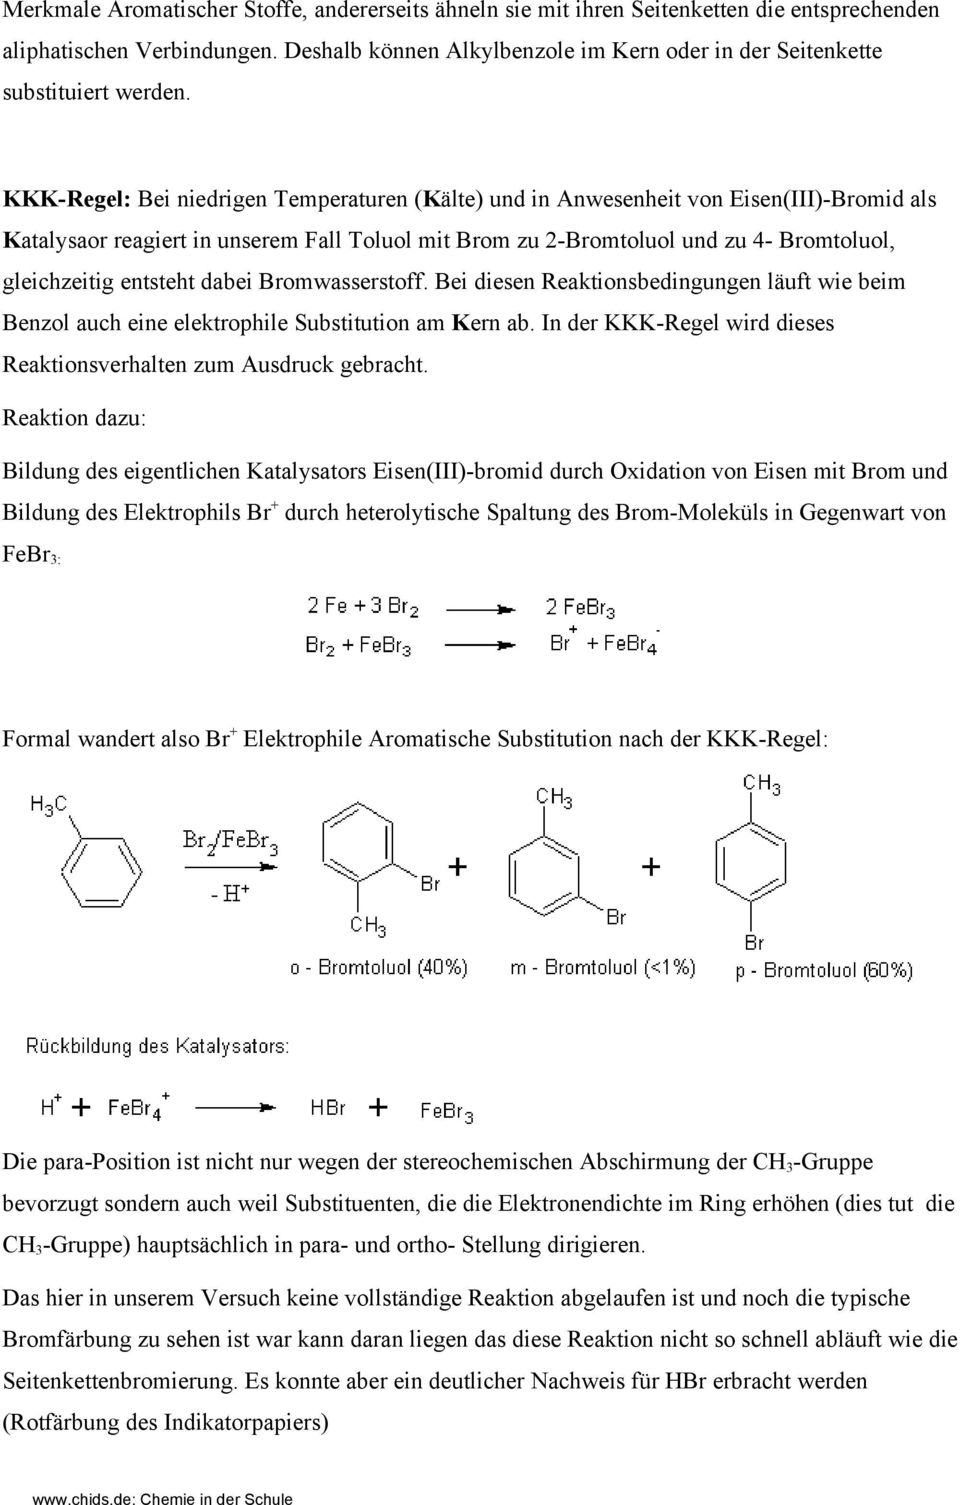 KKK-Regel: Bei niedrigen Temperaturen (Kälte) und in Anwesenheit von Eisen(III)-Bromid als Katalysaor reagiert in unserem Fall Toluol mit Brom zu 2-Bromtoluol und zu 4- Bromtoluol, gleichzeitig